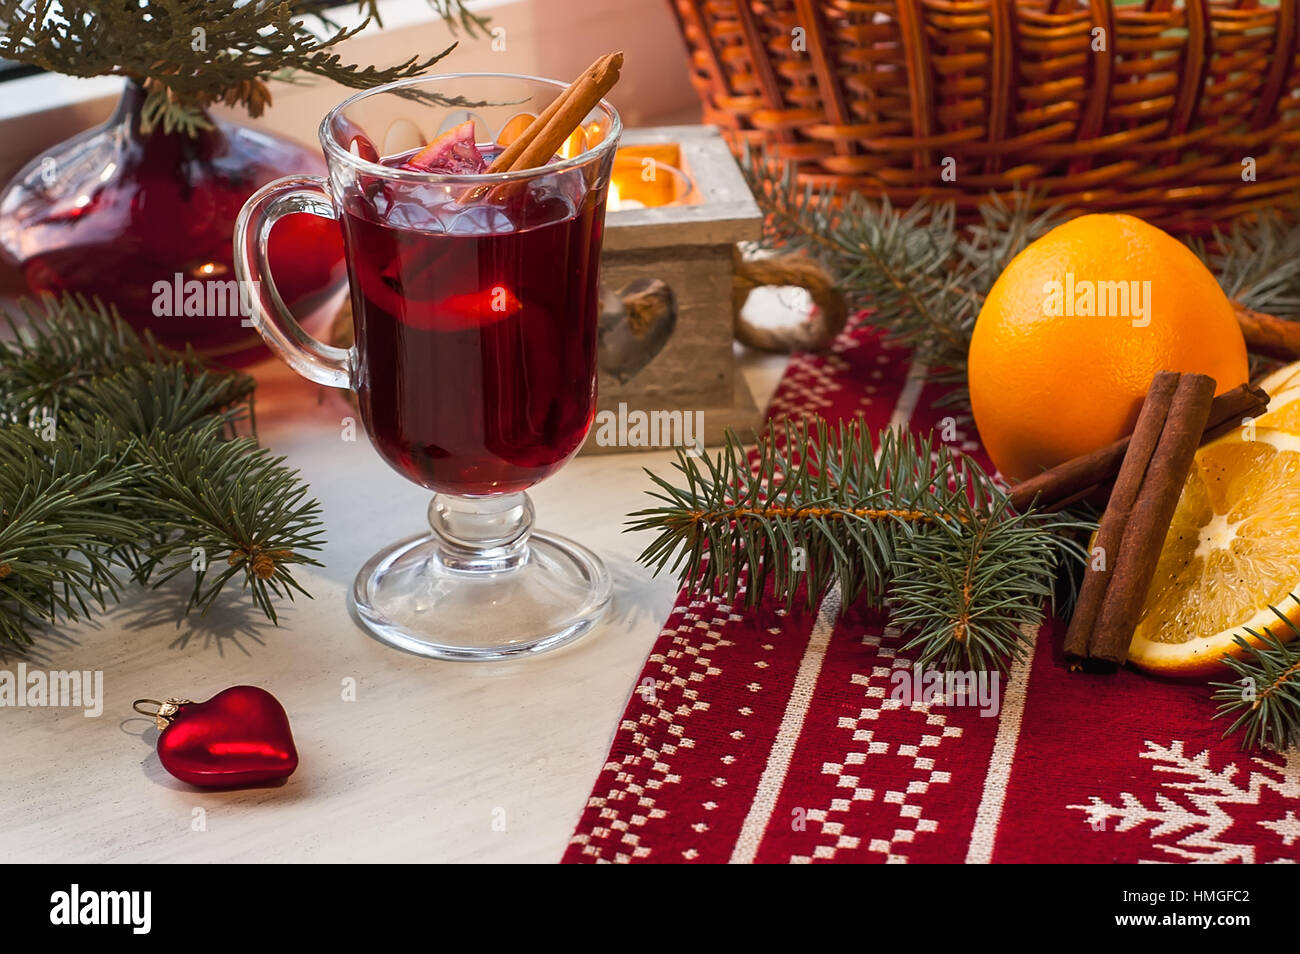 Verre de vin chaud sur table en bois avec bougie, l'orange, la cannelle et l'arbre de Noël. Maison de vacances d'hiver, Noël, nouvel an concept Banque D'Images